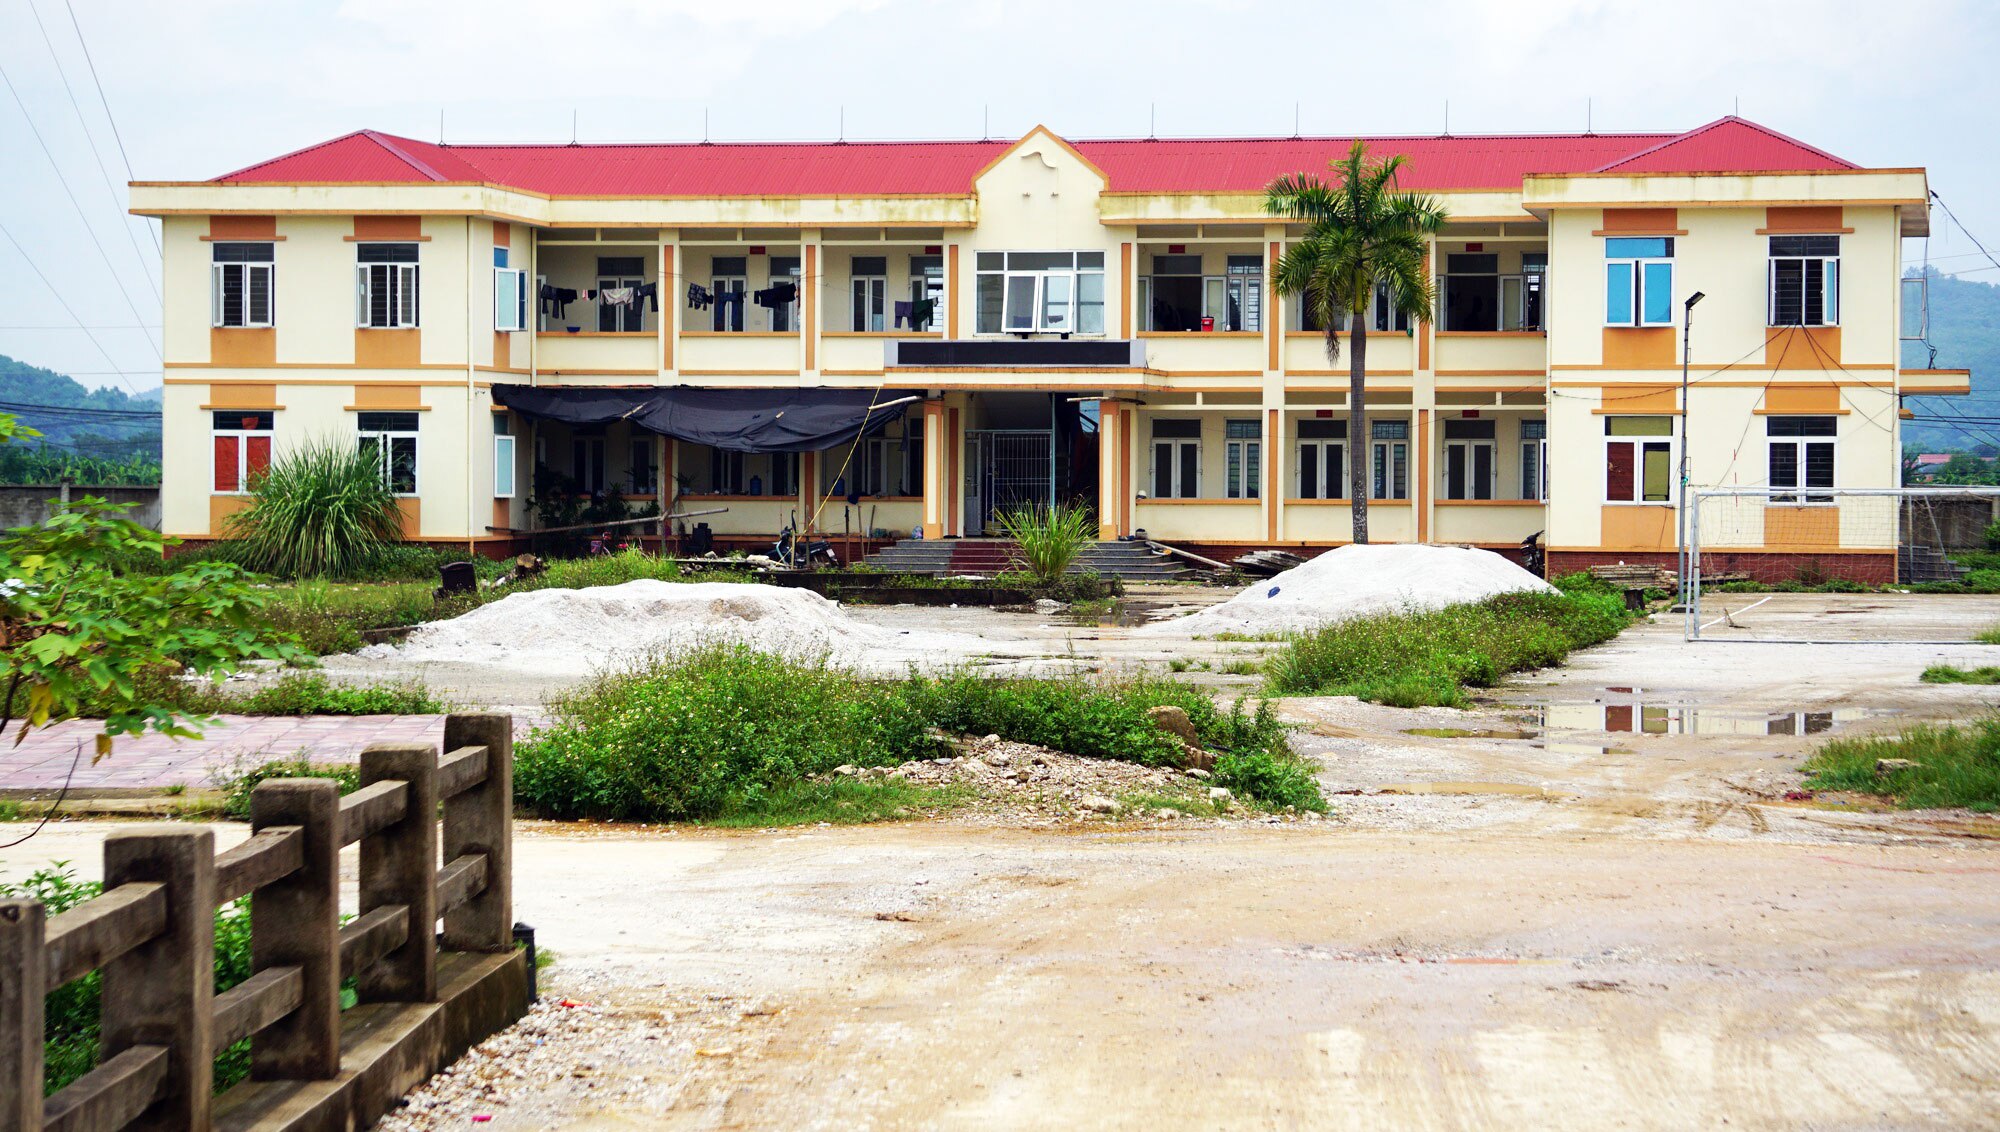 Lãng phí công sở bỏ hoang ở Thanh Hóa - Ảnh 2.